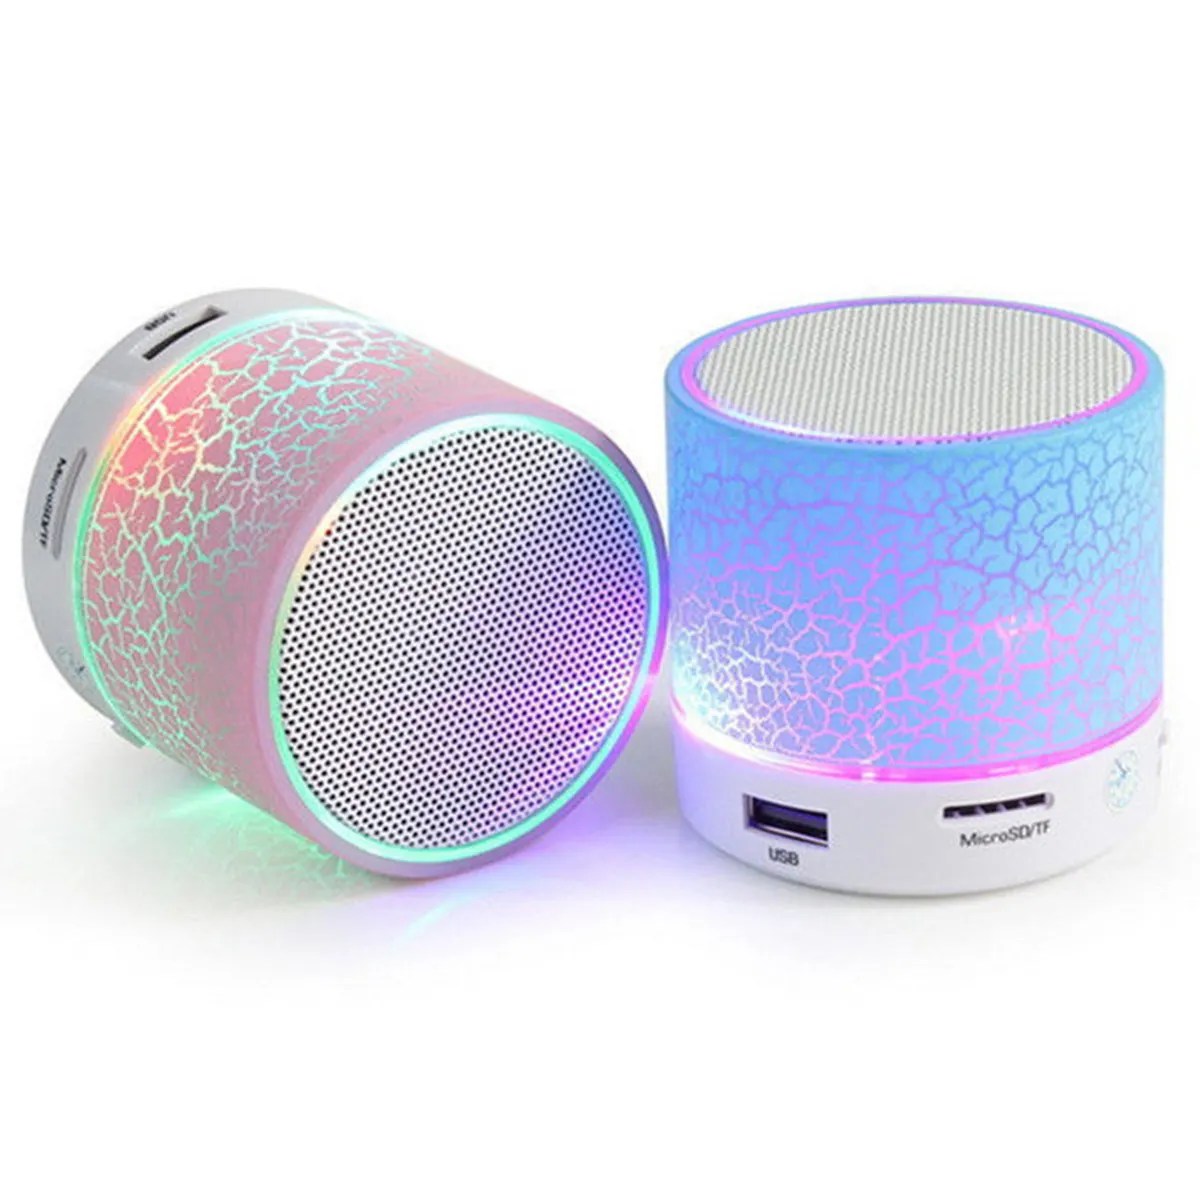 Alto-falante led com dois tamanhos, luz piscante, som inteligente, com luz colorida, tf usb, portátil, caixa de som